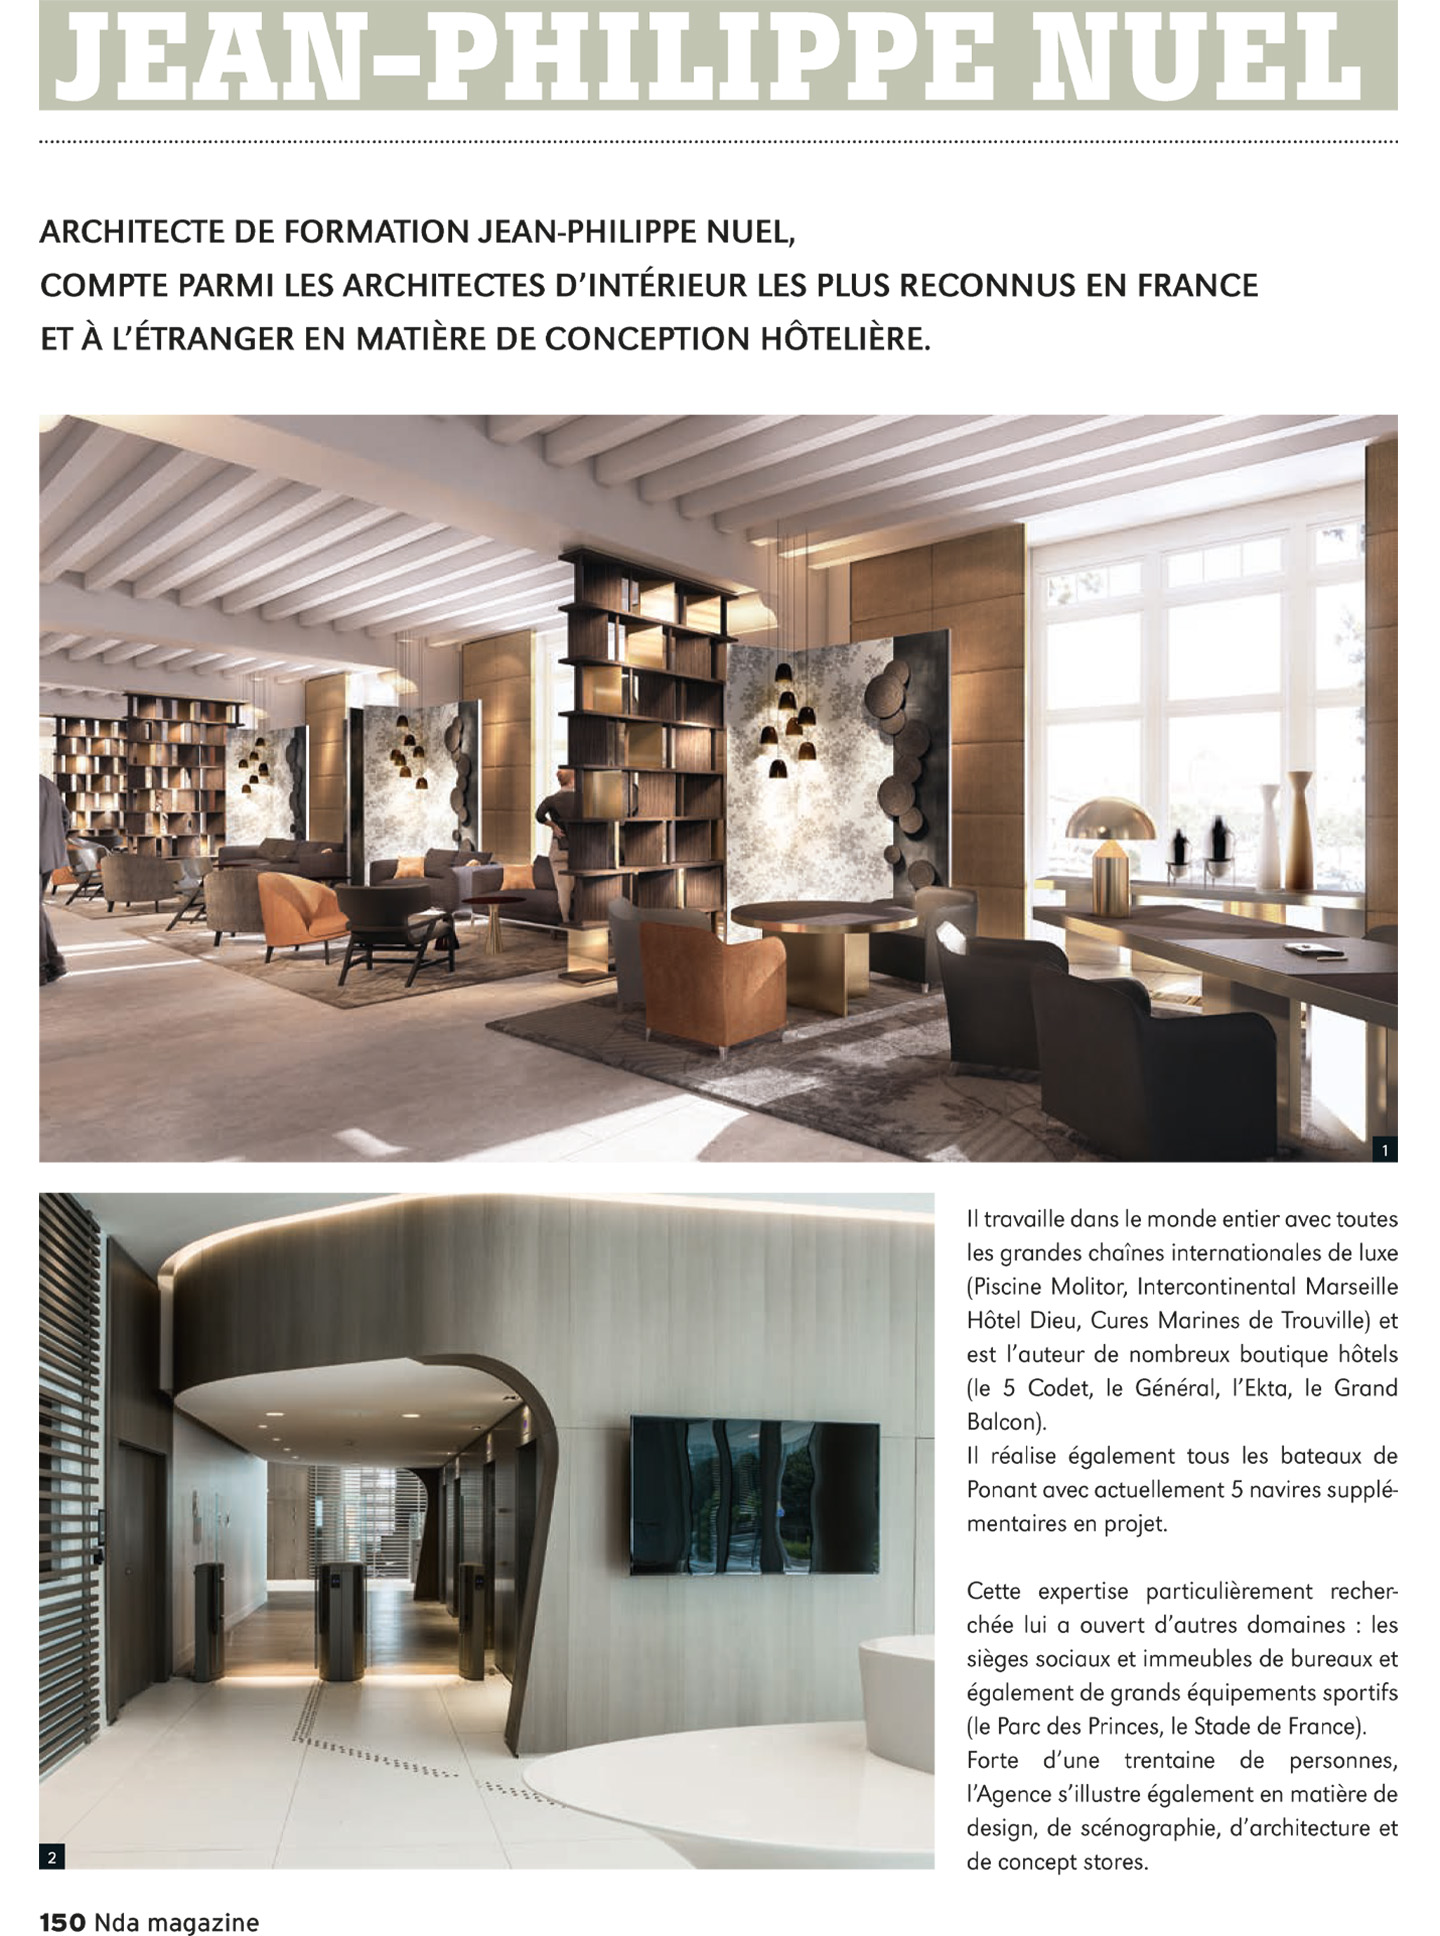 article sur le studio jean-philippe nuel dans le magazine nda et sur ses réalisations en architecture d'intérieur et design de luxe